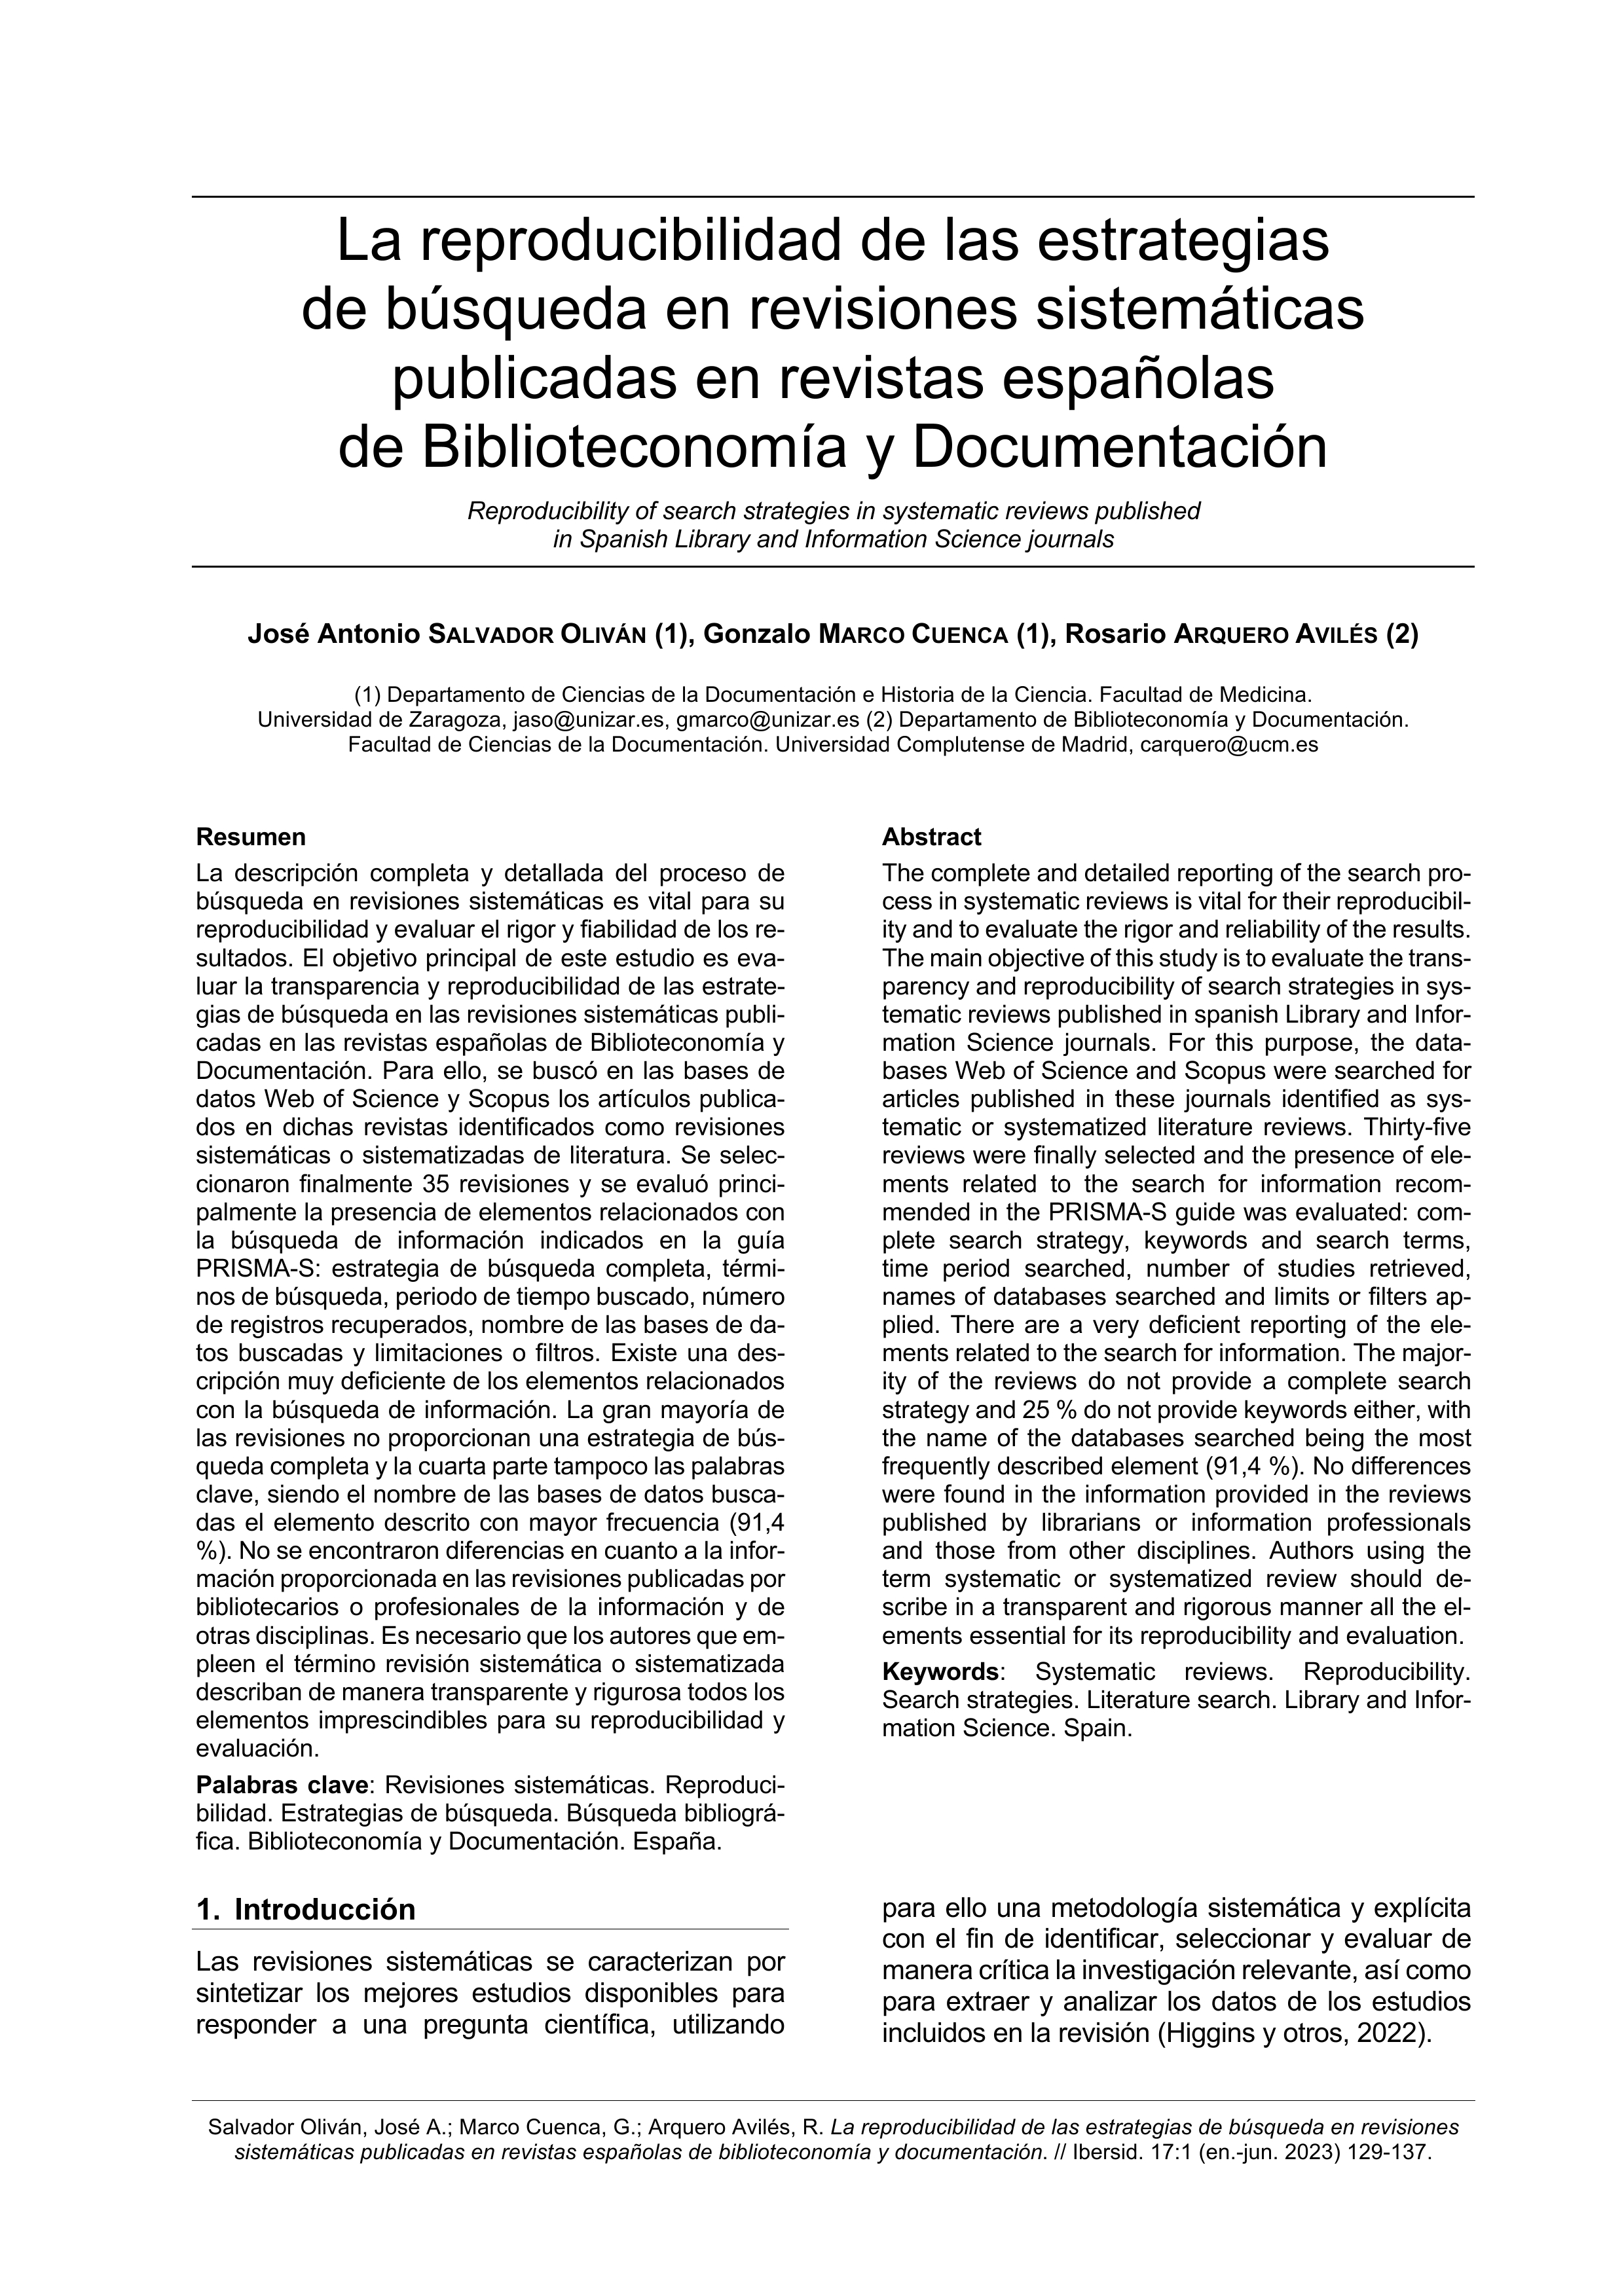 La reproducibilidad de las estrategias de búsqueda en revisiones sistemáticas publicadas en revistas españolas de Biblioteconomía y Documentación